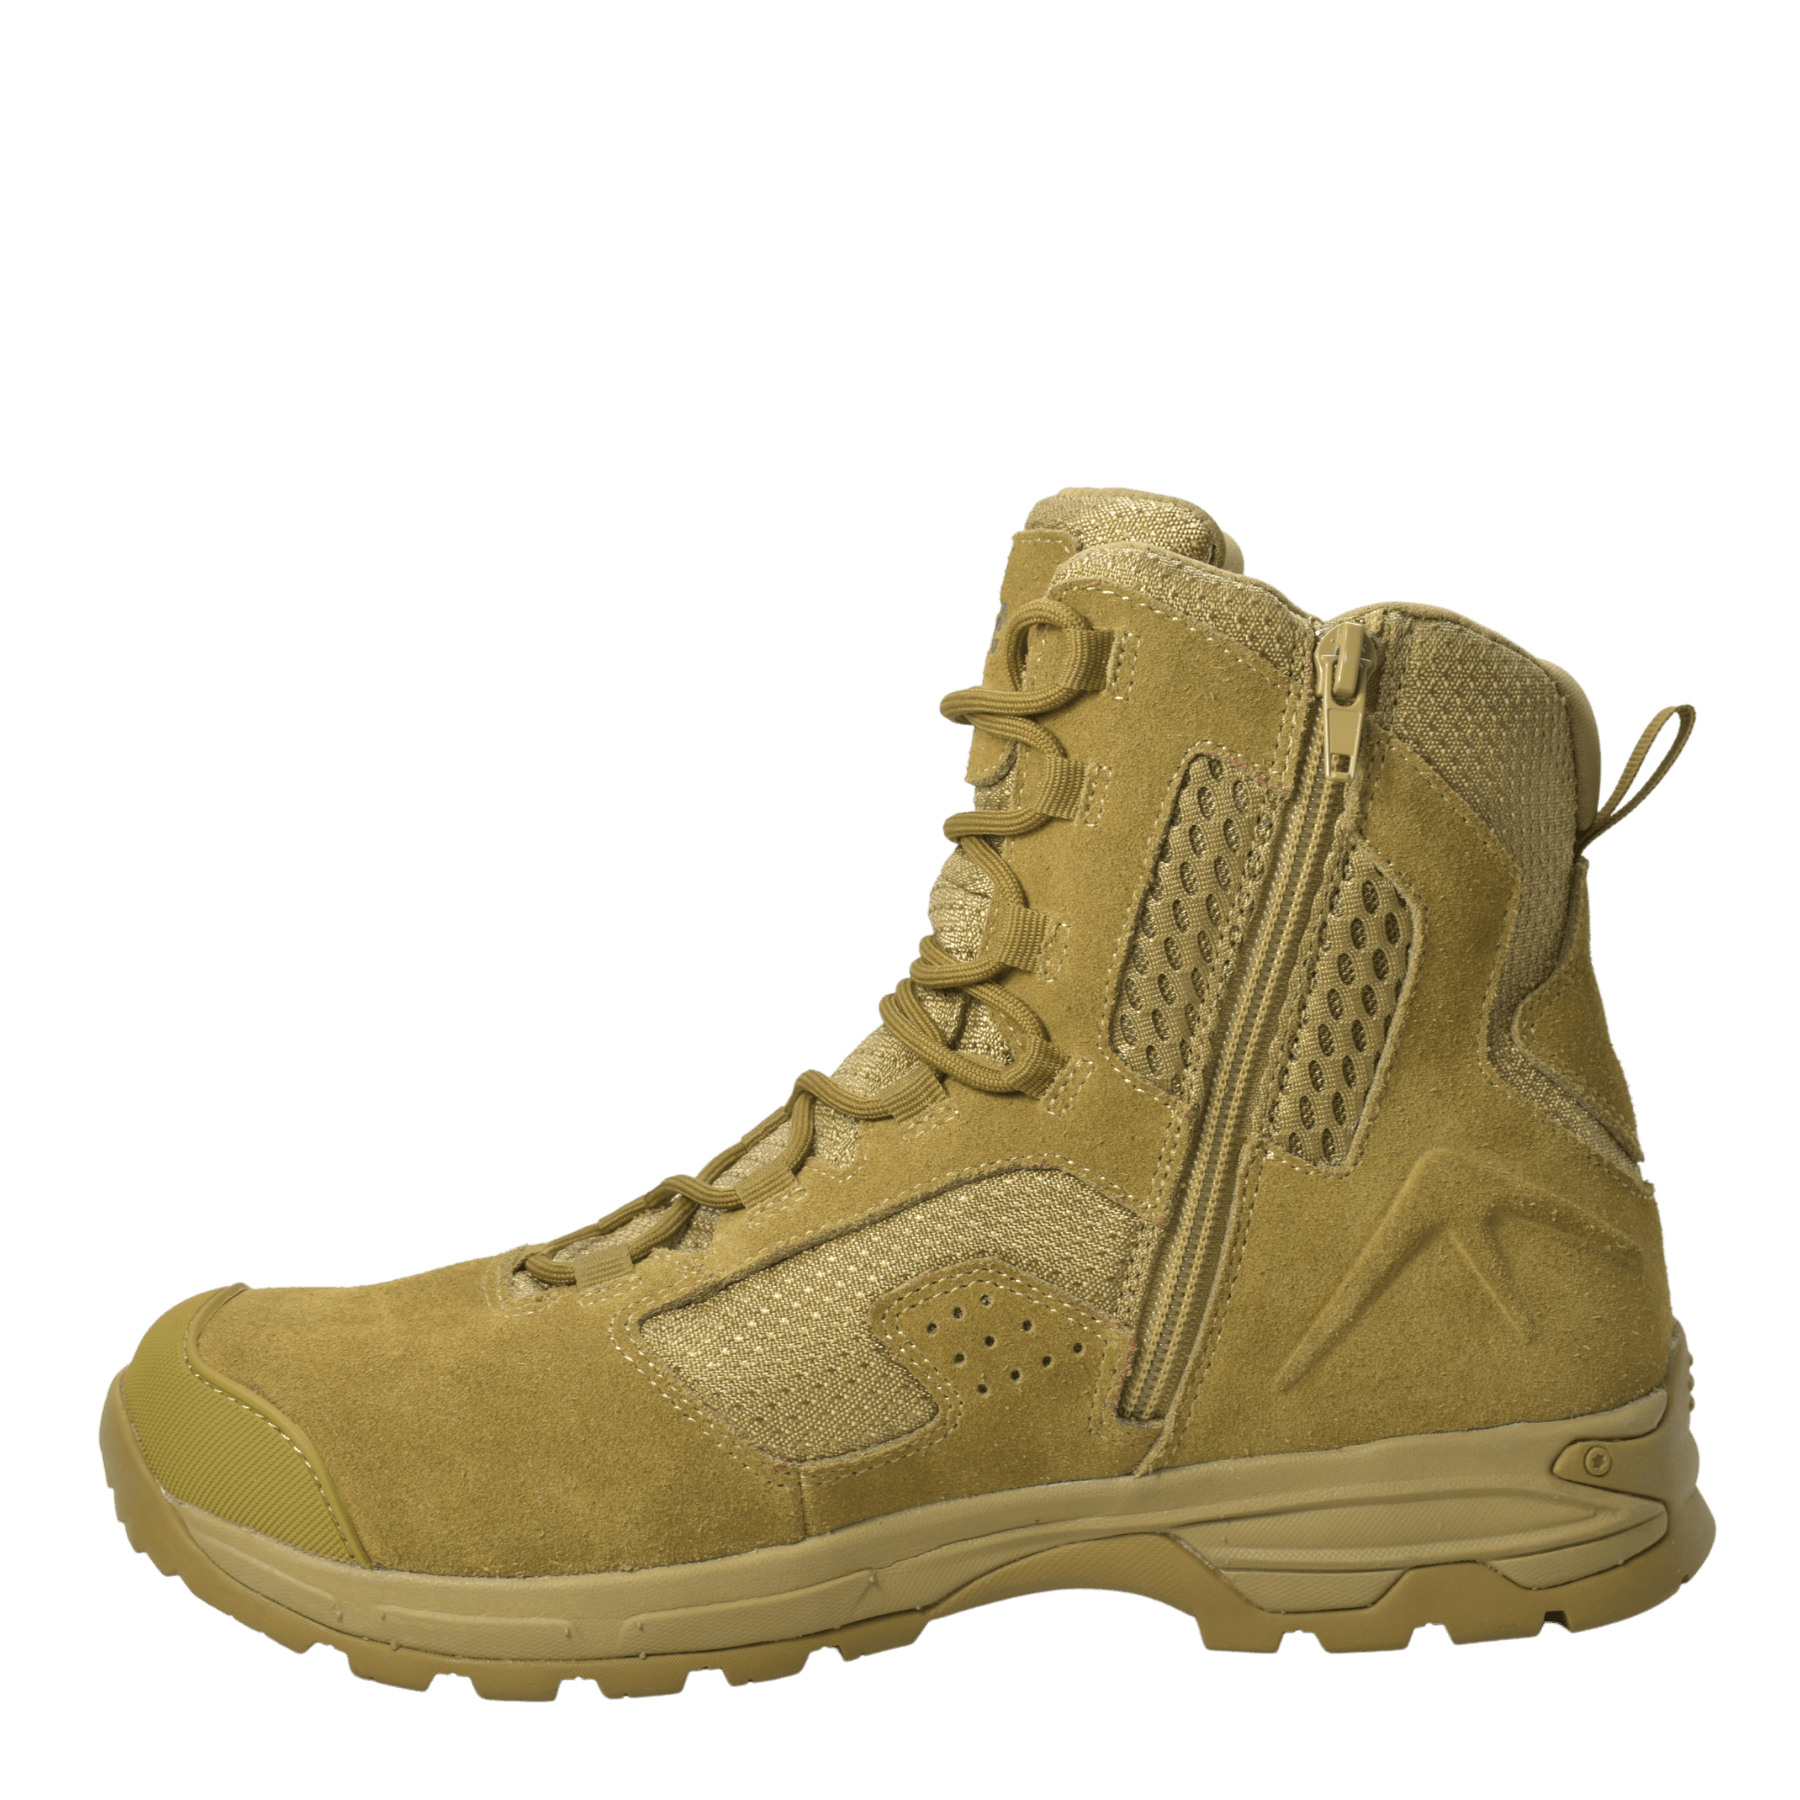 AdTec Men's 8" Suede Leather Side Zipper Waterproof Tactical Boot Coyote - Flyclothing LLC